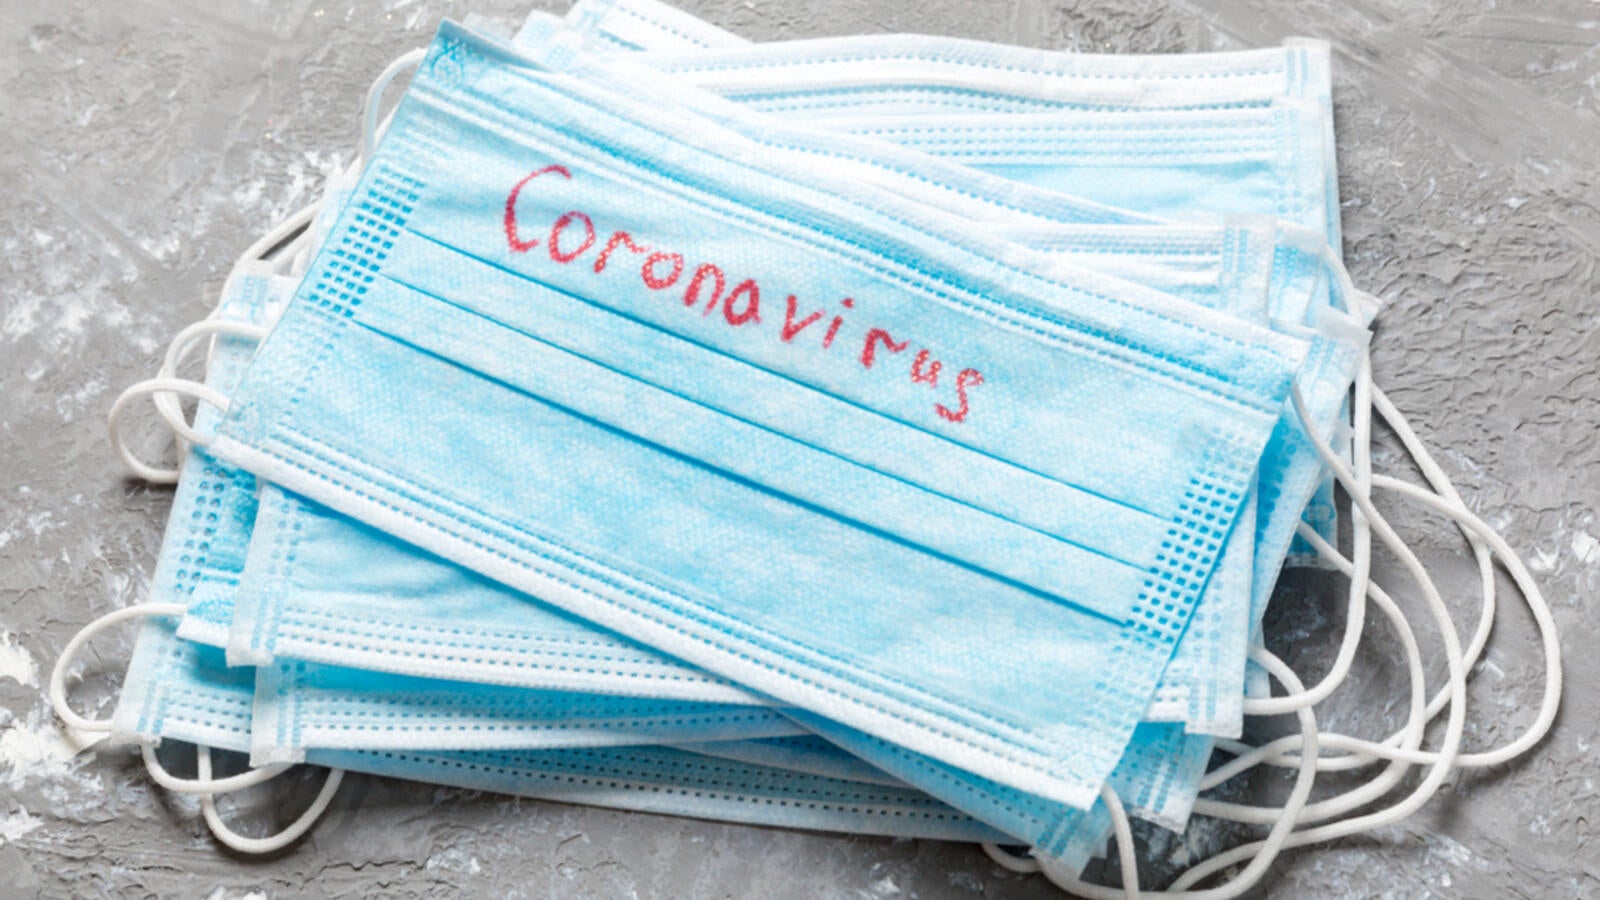 Frika nga koronavirus, edhe në Suharekë rriten çmimet për maska dhe dizinfektantët